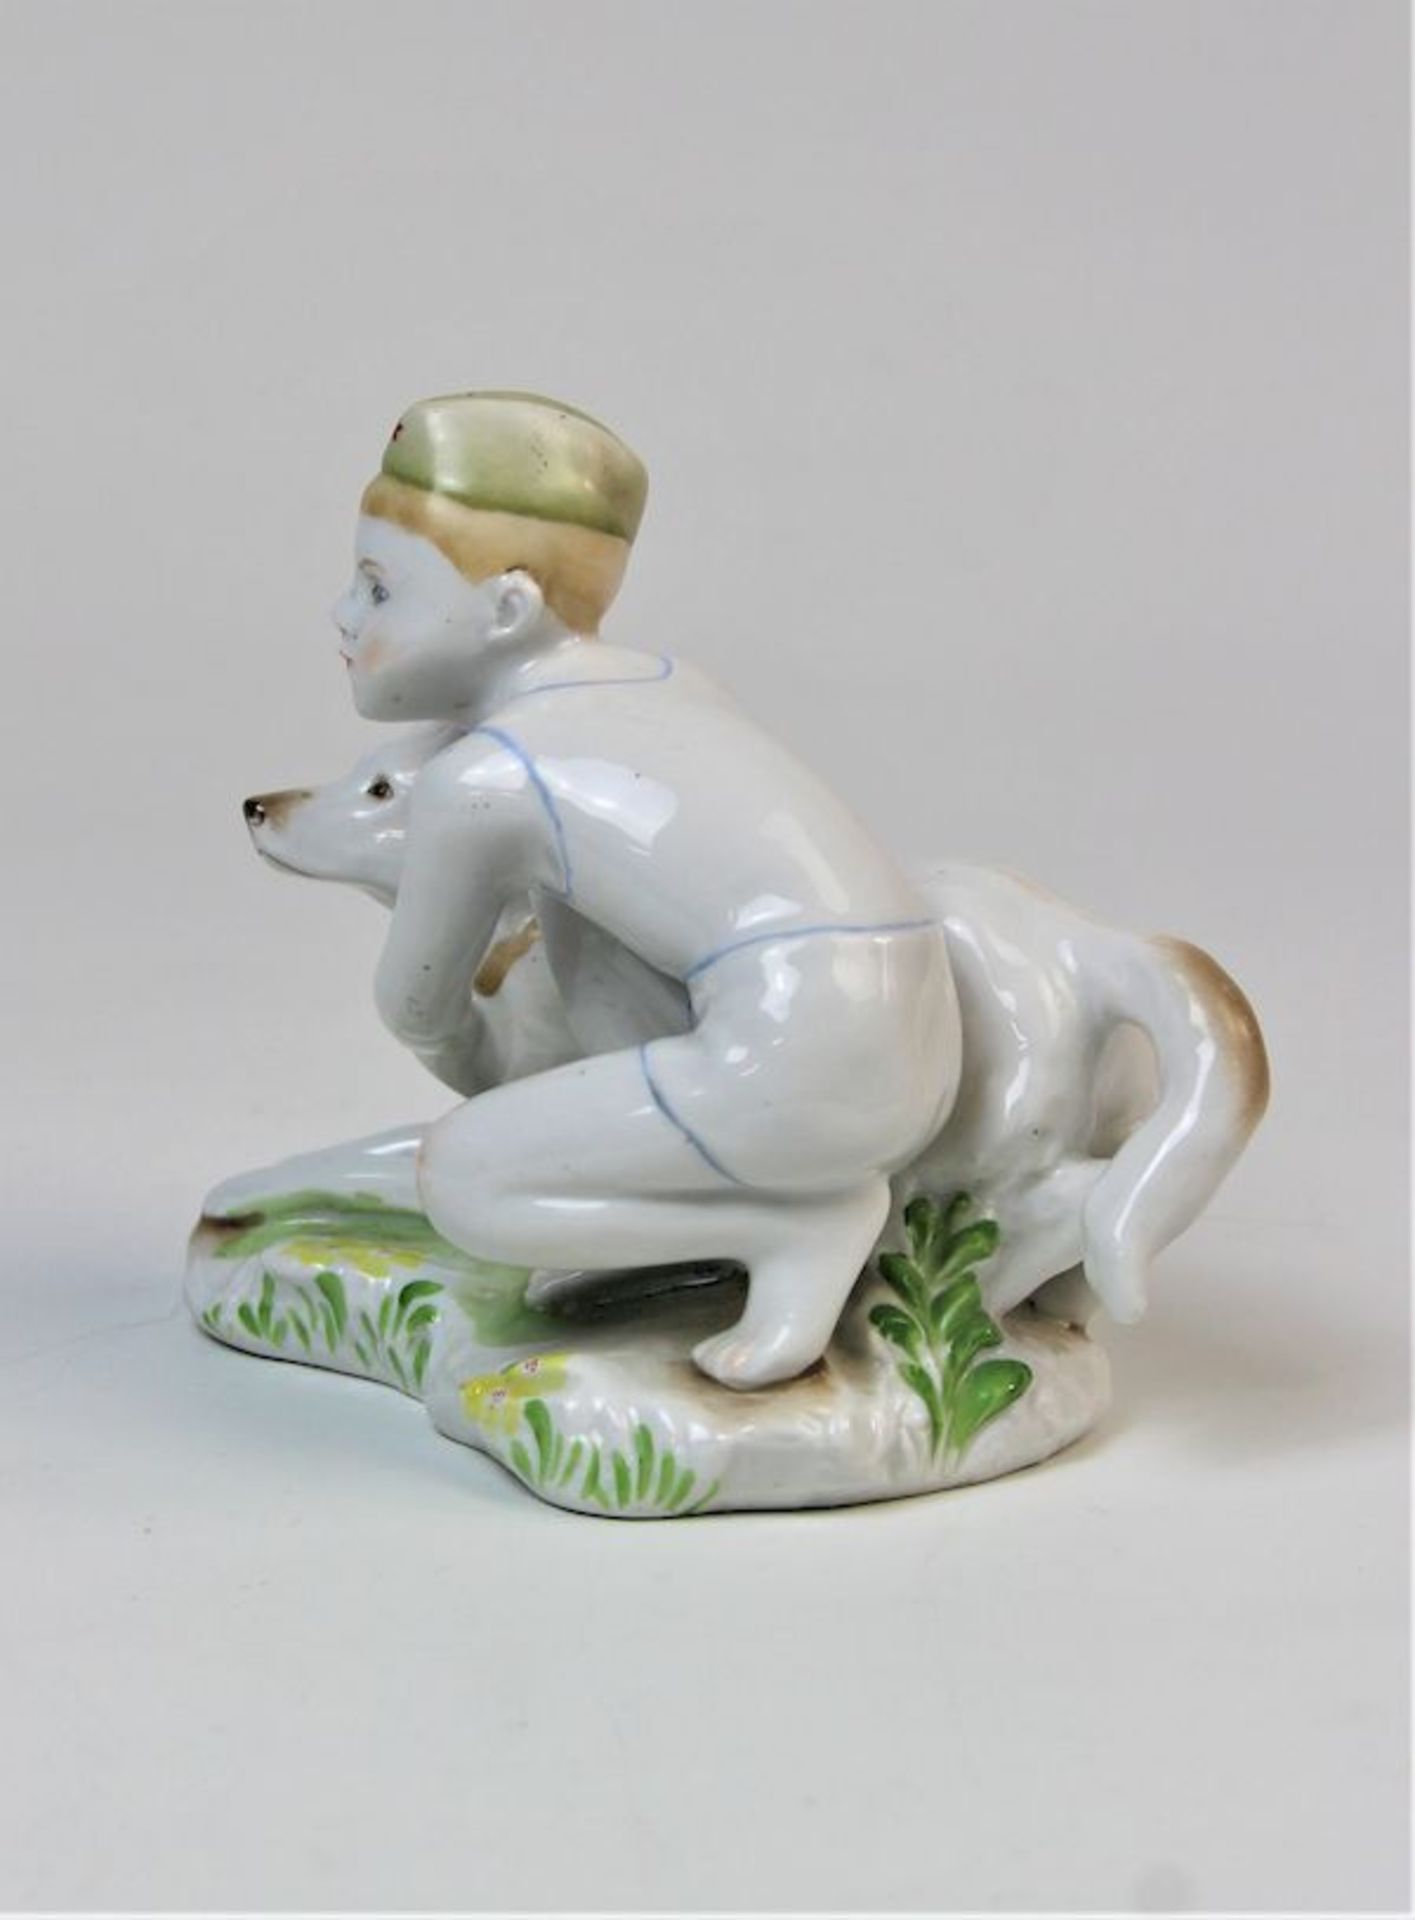 Sowjetische Porzellanfigur, " Sowjetischer Kadett mit Schäferhund "Porzellan,polychrome Malerei Am - Image 2 of 4